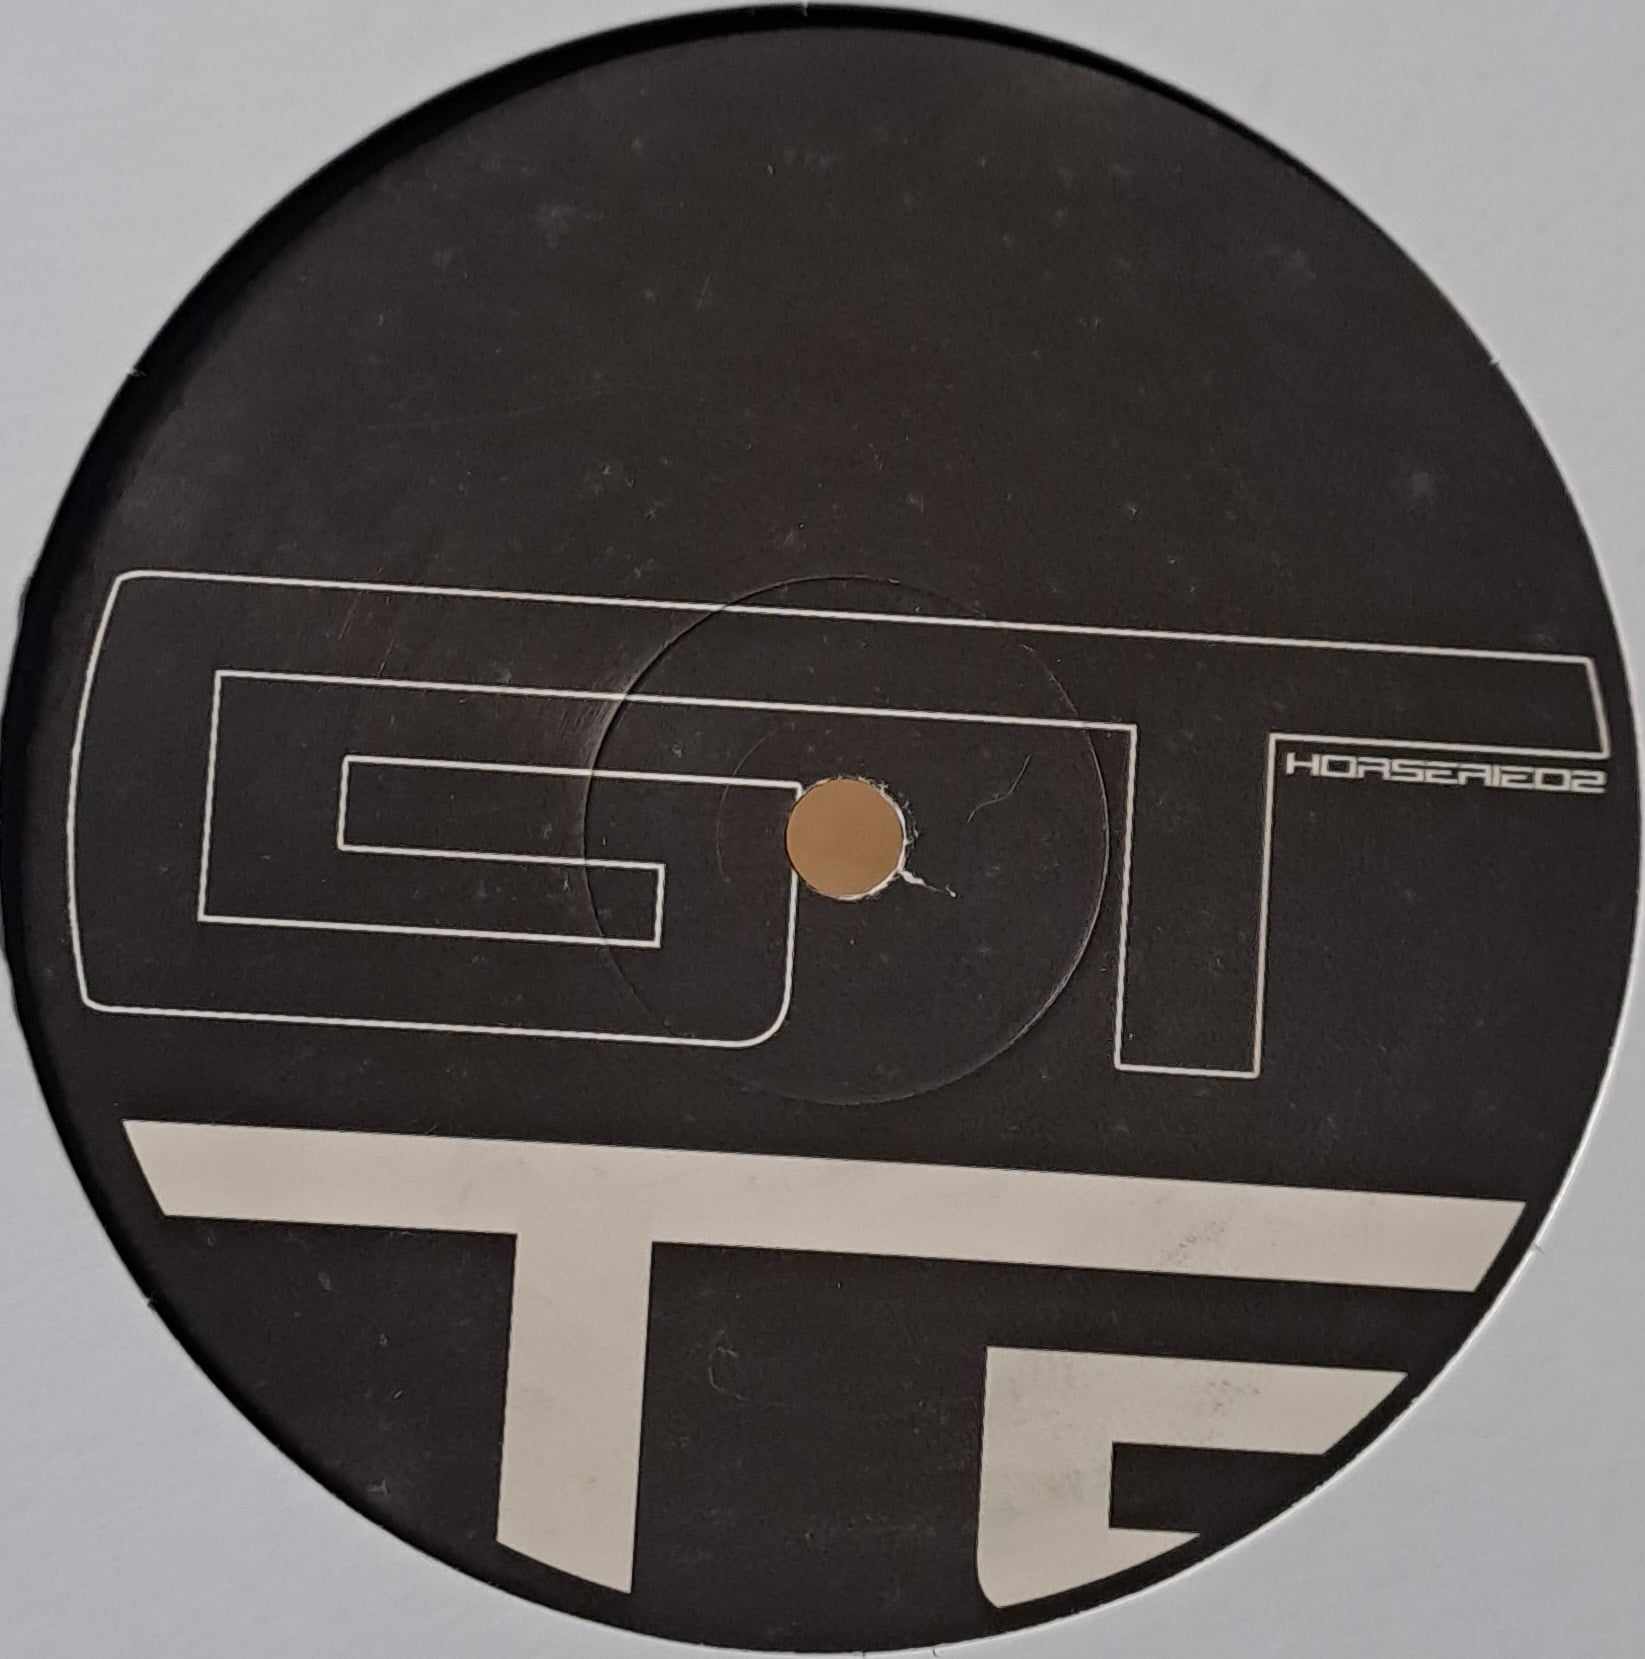 Gelstat Horserie 02 - vinyle techno